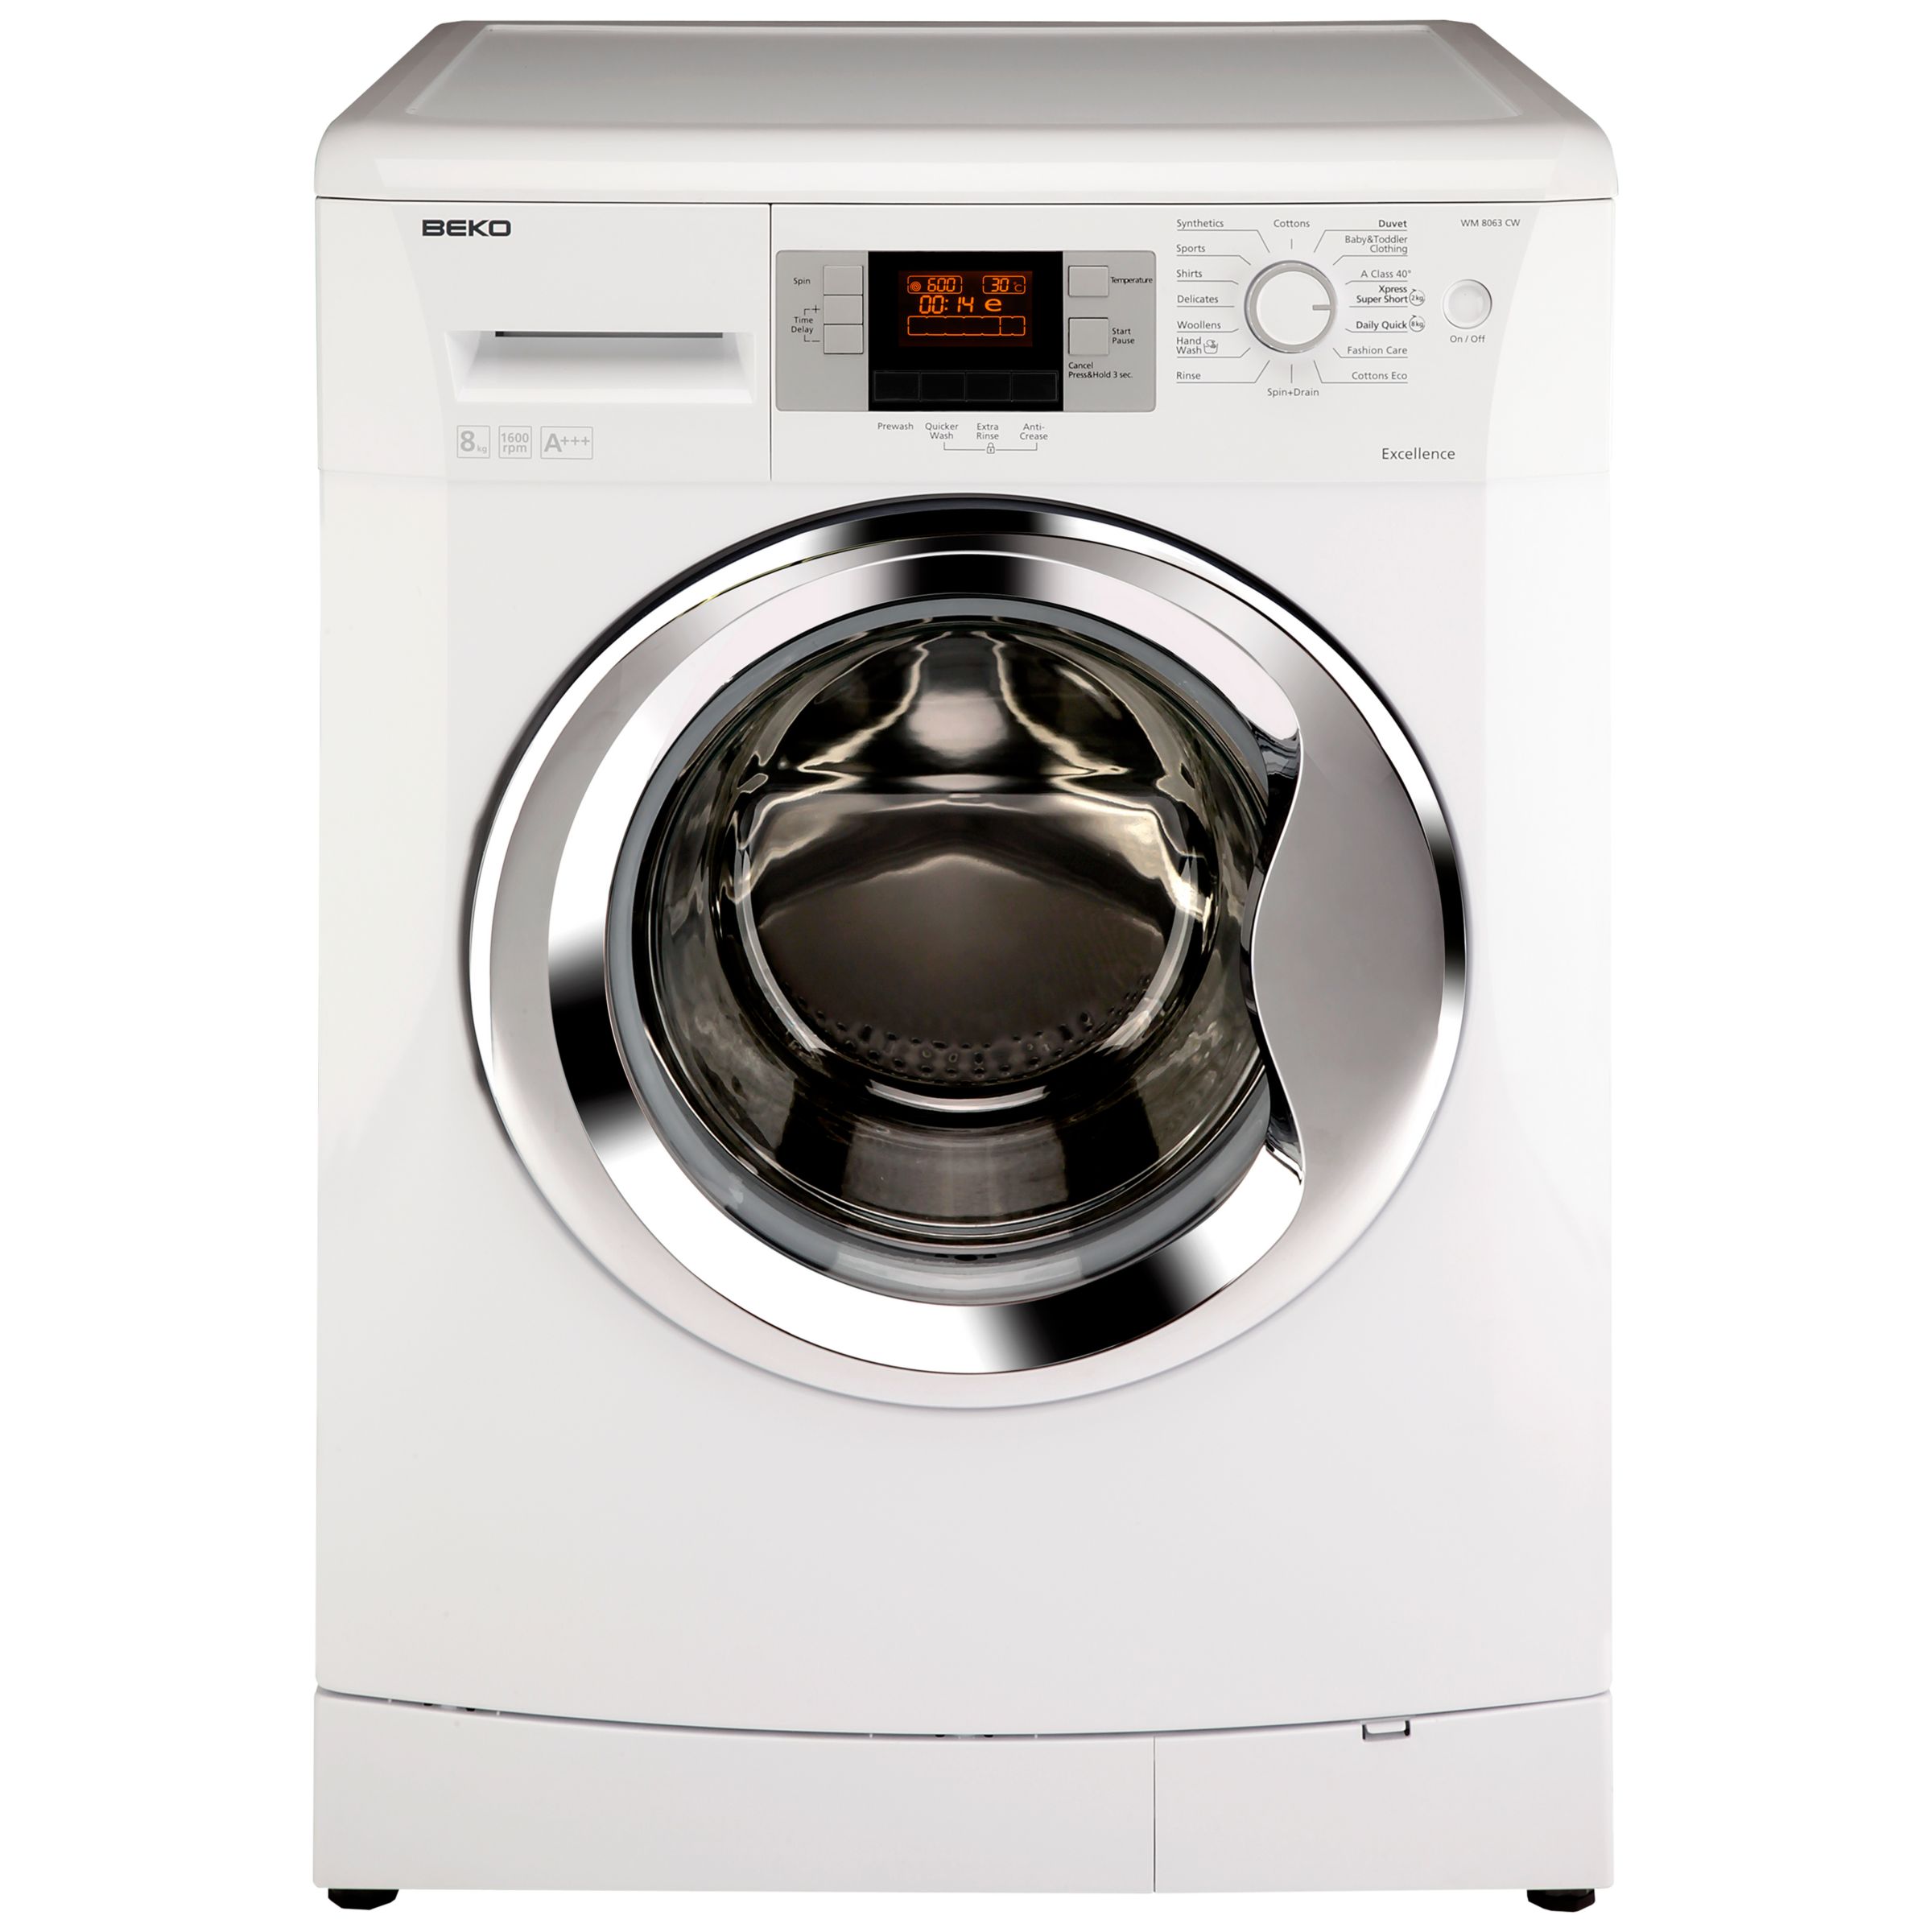 Beko WM8063CW Washing Machine, 8kg load, A+++ Energy Rating, 1600rpm Spin, White at John Lewis ...